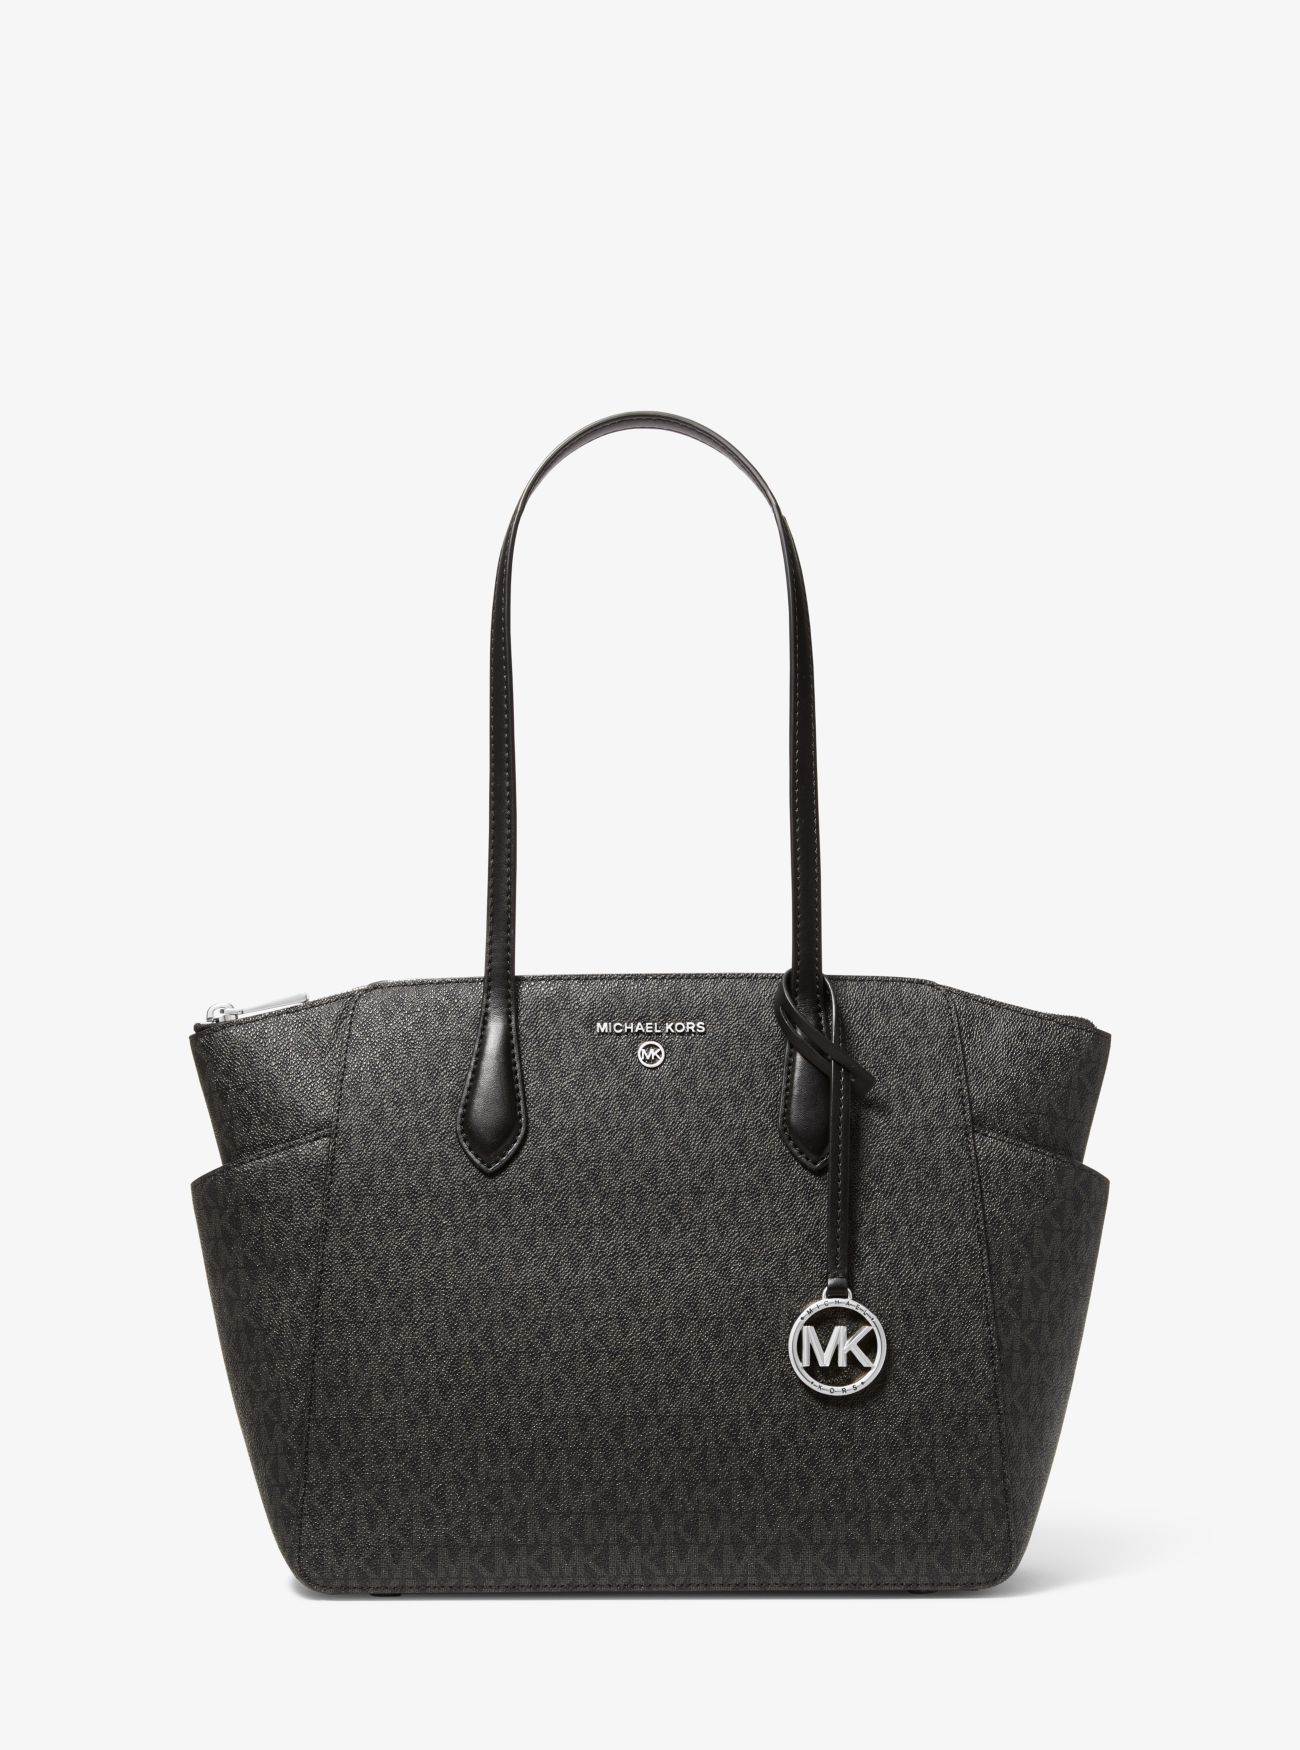 MK Marilyn Medium Logo Tote Bag - Black - Michael Kors